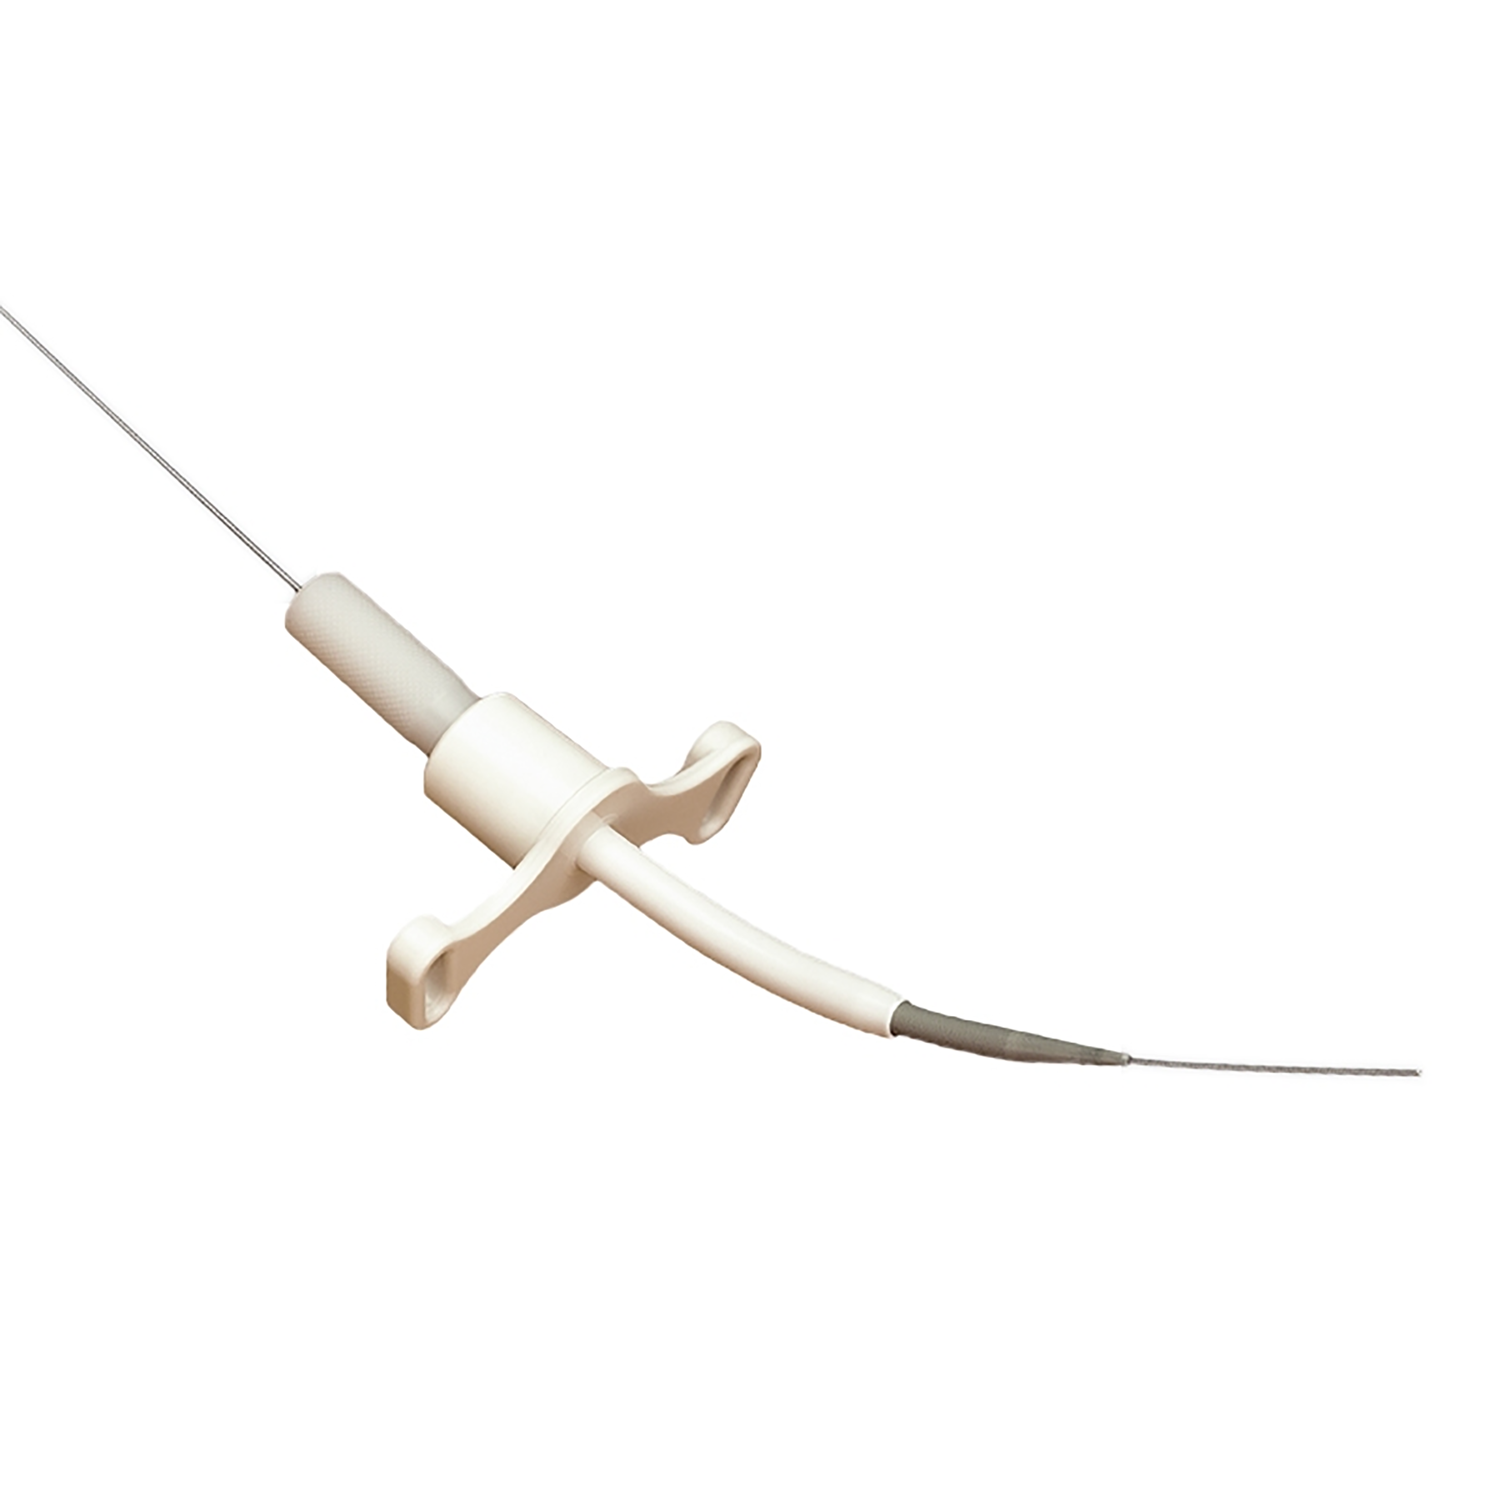 Melker Emergency Cricothyrotomy Catheter Set (Seldinger) | Uncuffed | Single